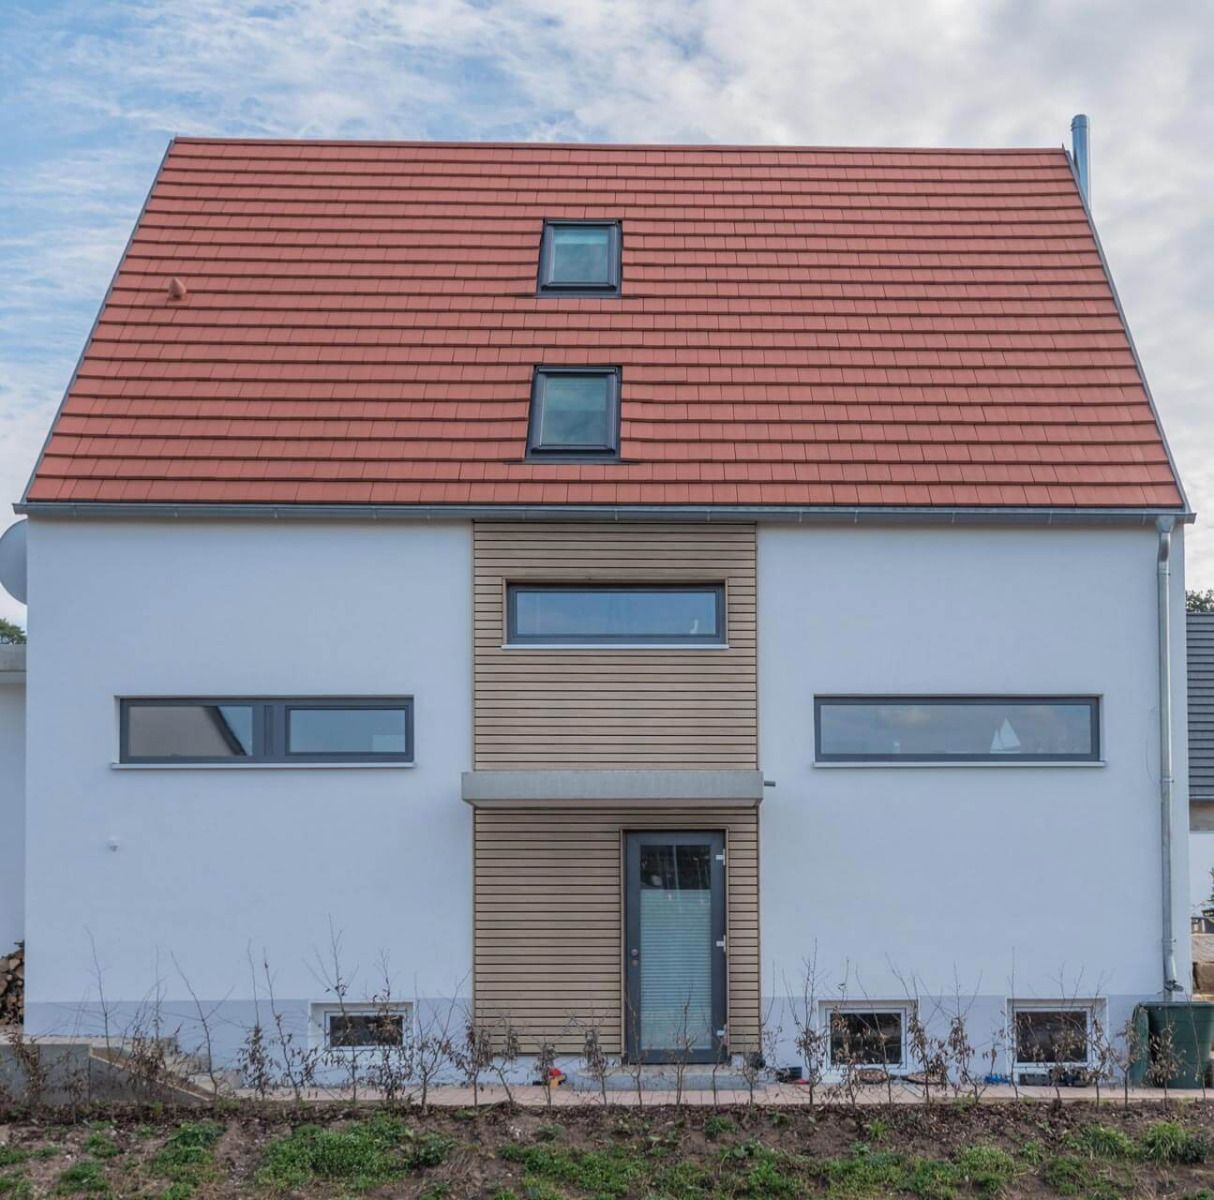 Ein Einfamilienhaus mit einer modernen Vorhangfassade in Rhombusoptik. Die schmalen Rhombusleisten bestehen aus recyceltem Hart-PVC und sind mit einer UV-beständigen Strukturfolie beschichtet